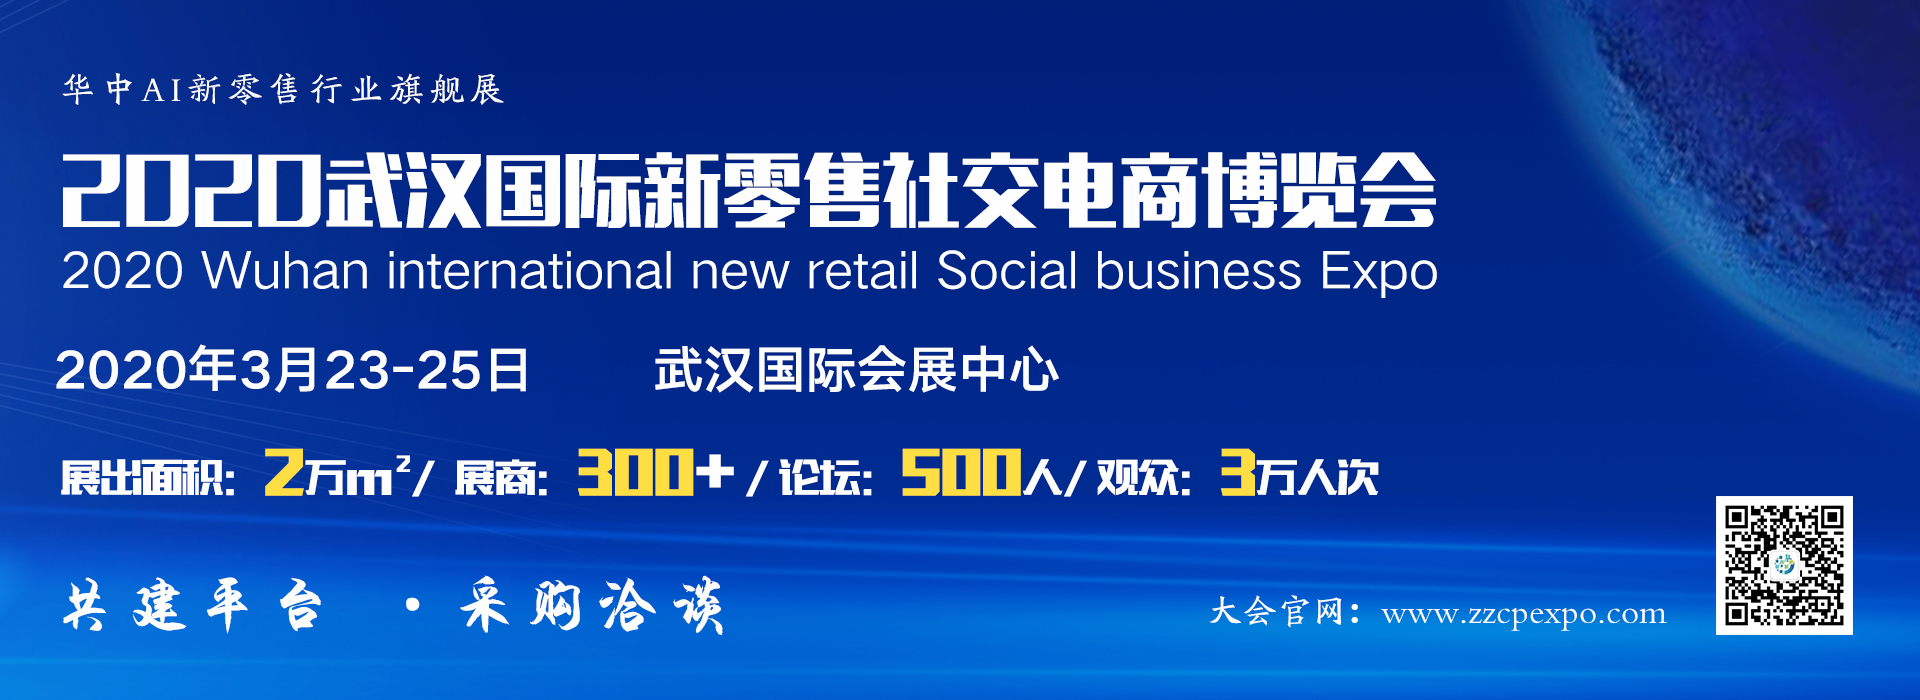 2020武汉国际新零售社交电商博览会3月精彩呈现